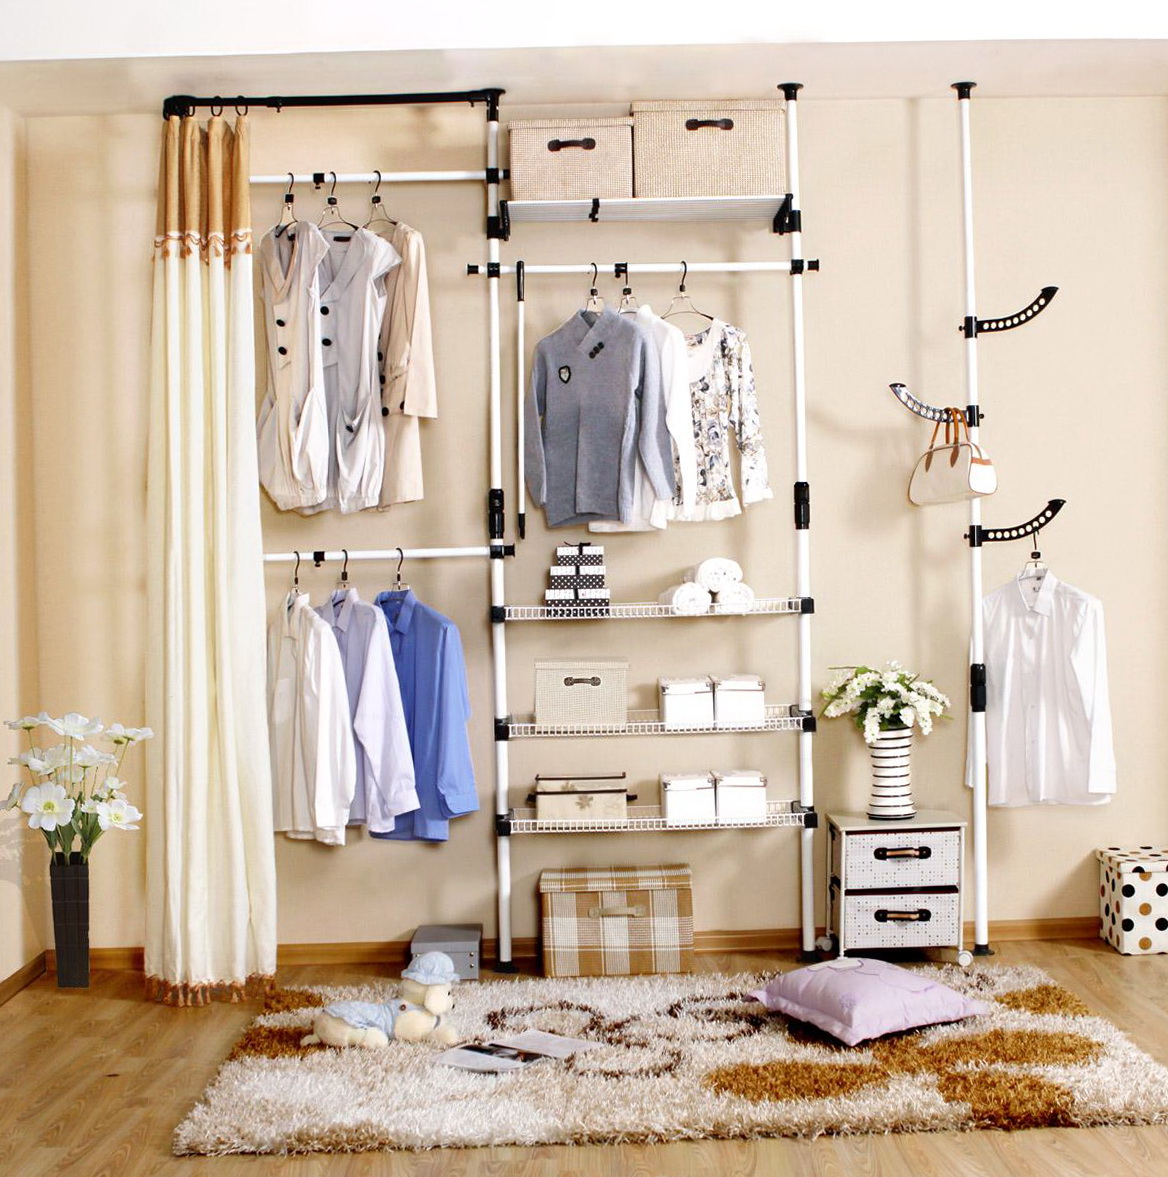 Diy Hanging Closet Organizer | Home Design Ideas